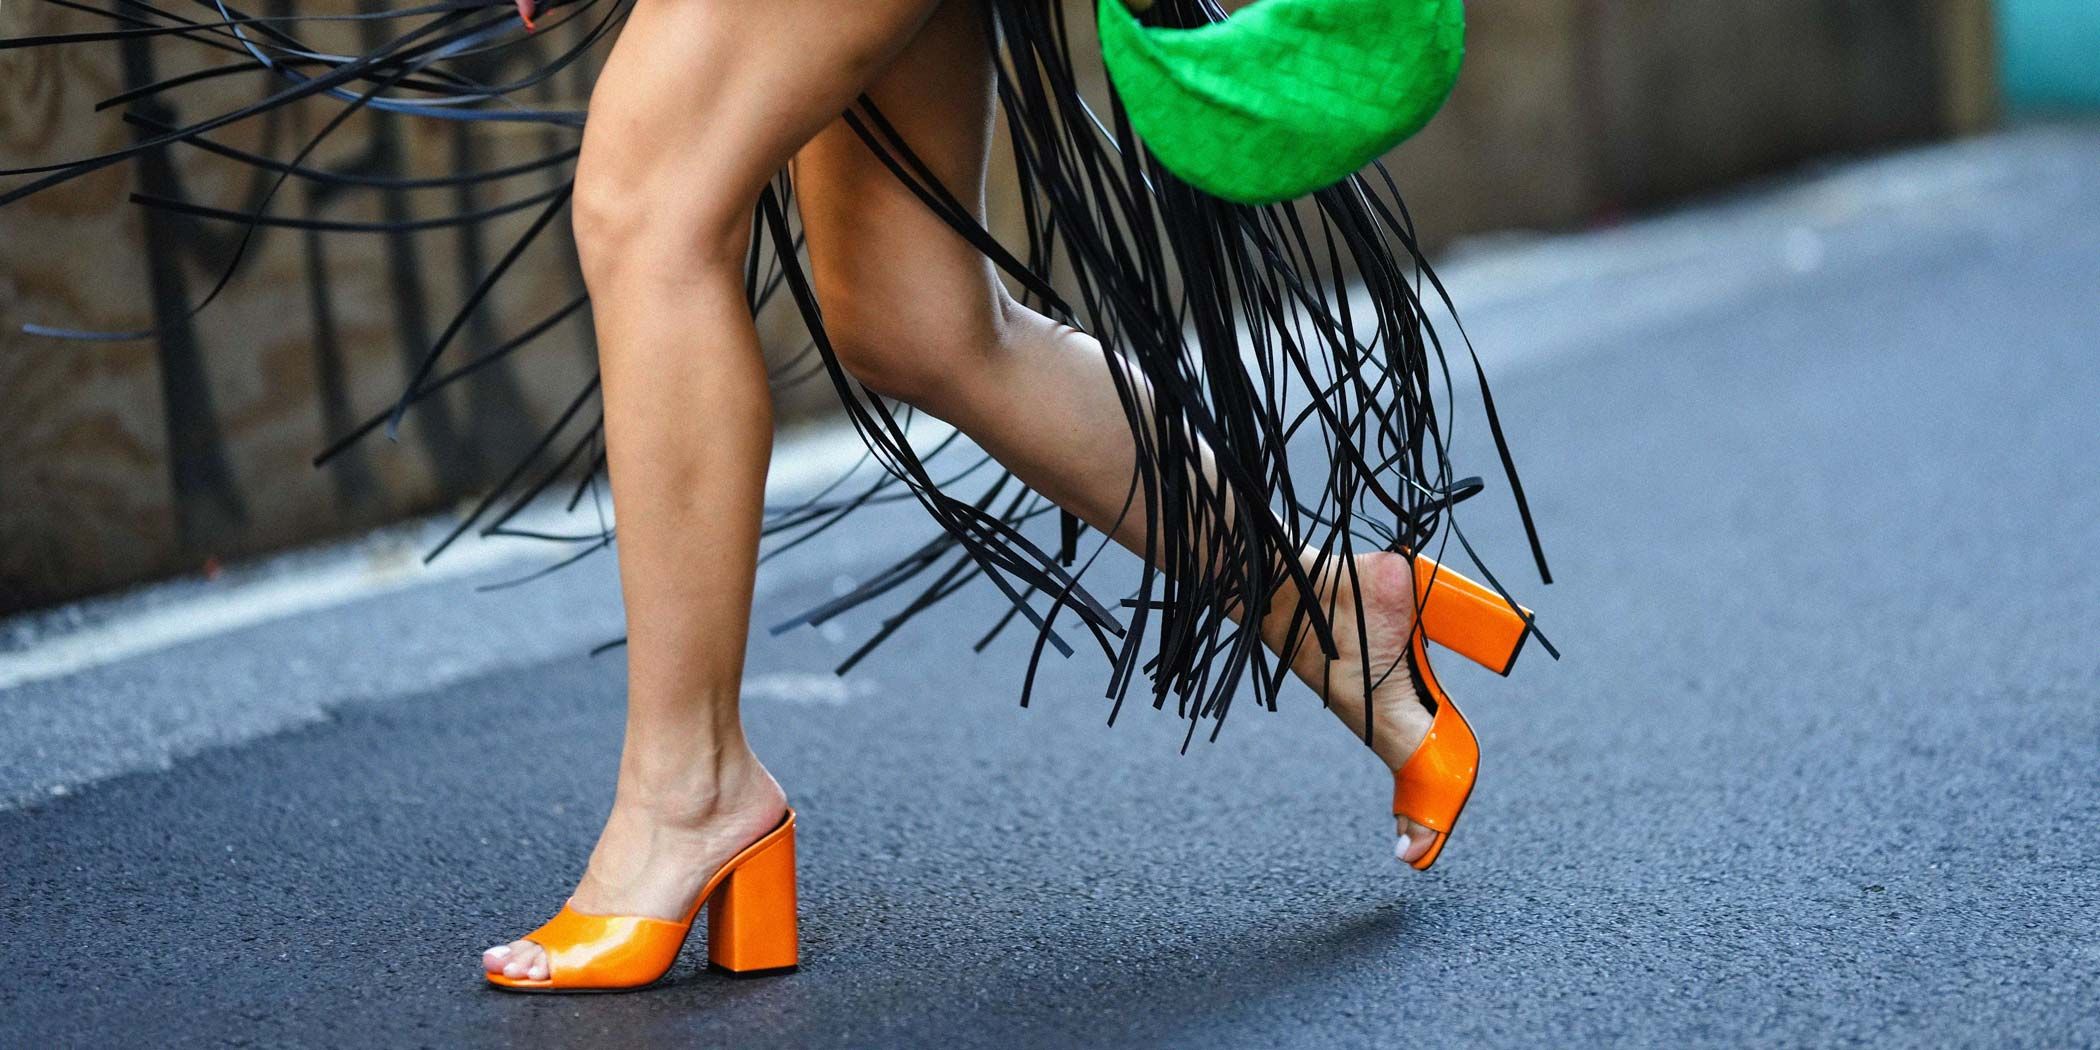 III. Exploring the Latest Women's Shoe Trends